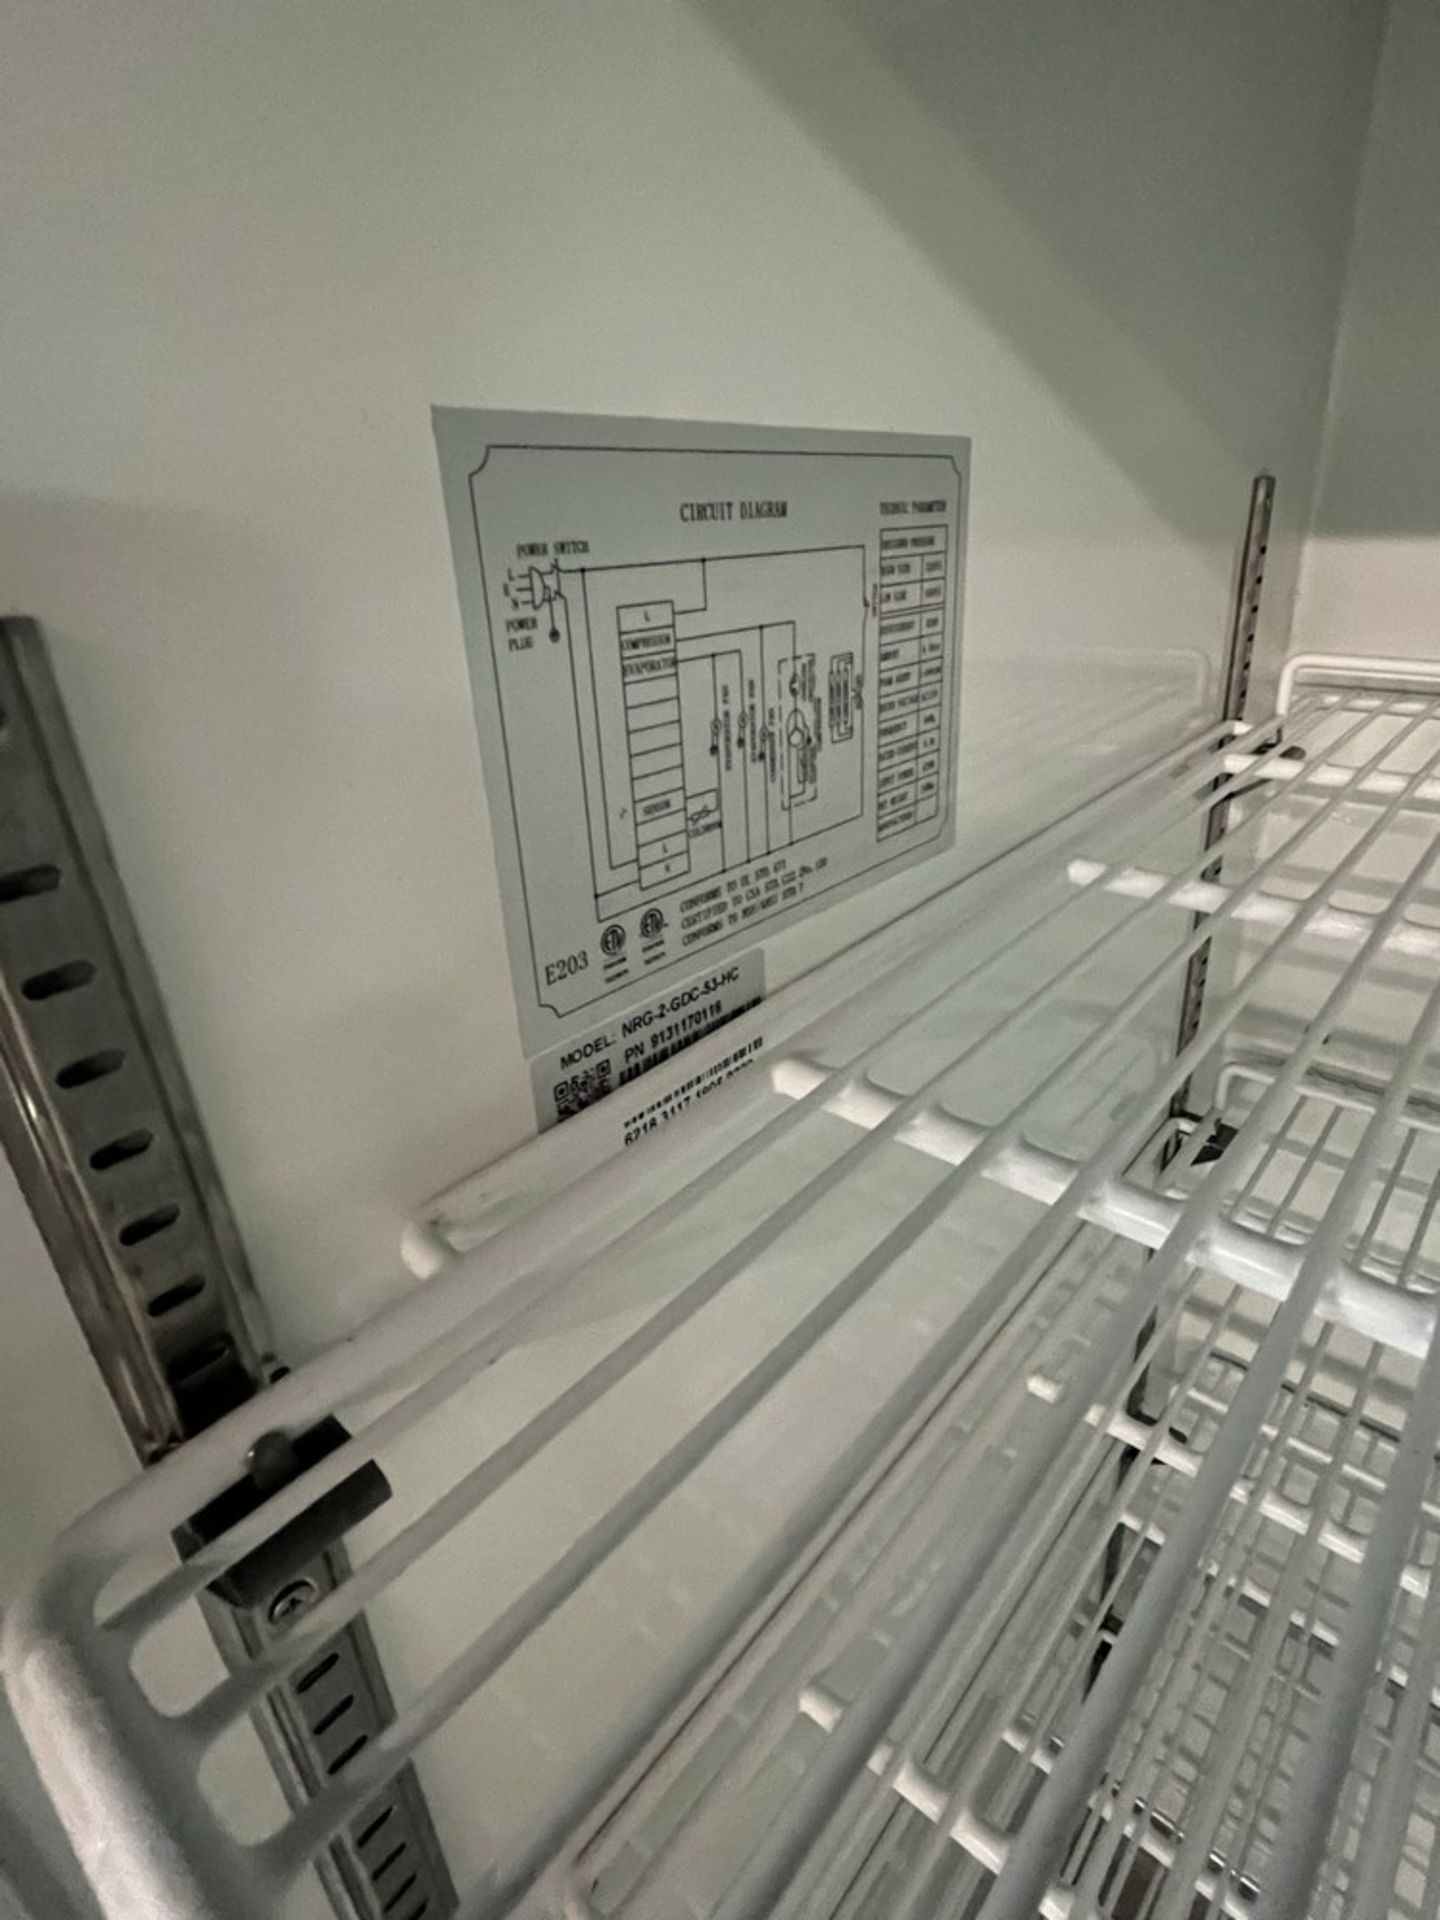 Réfrigérateur DANAIR, 2-portes vitrés coulissantes, mod: NRG-2GDC-53 HC - Image 2 of 4